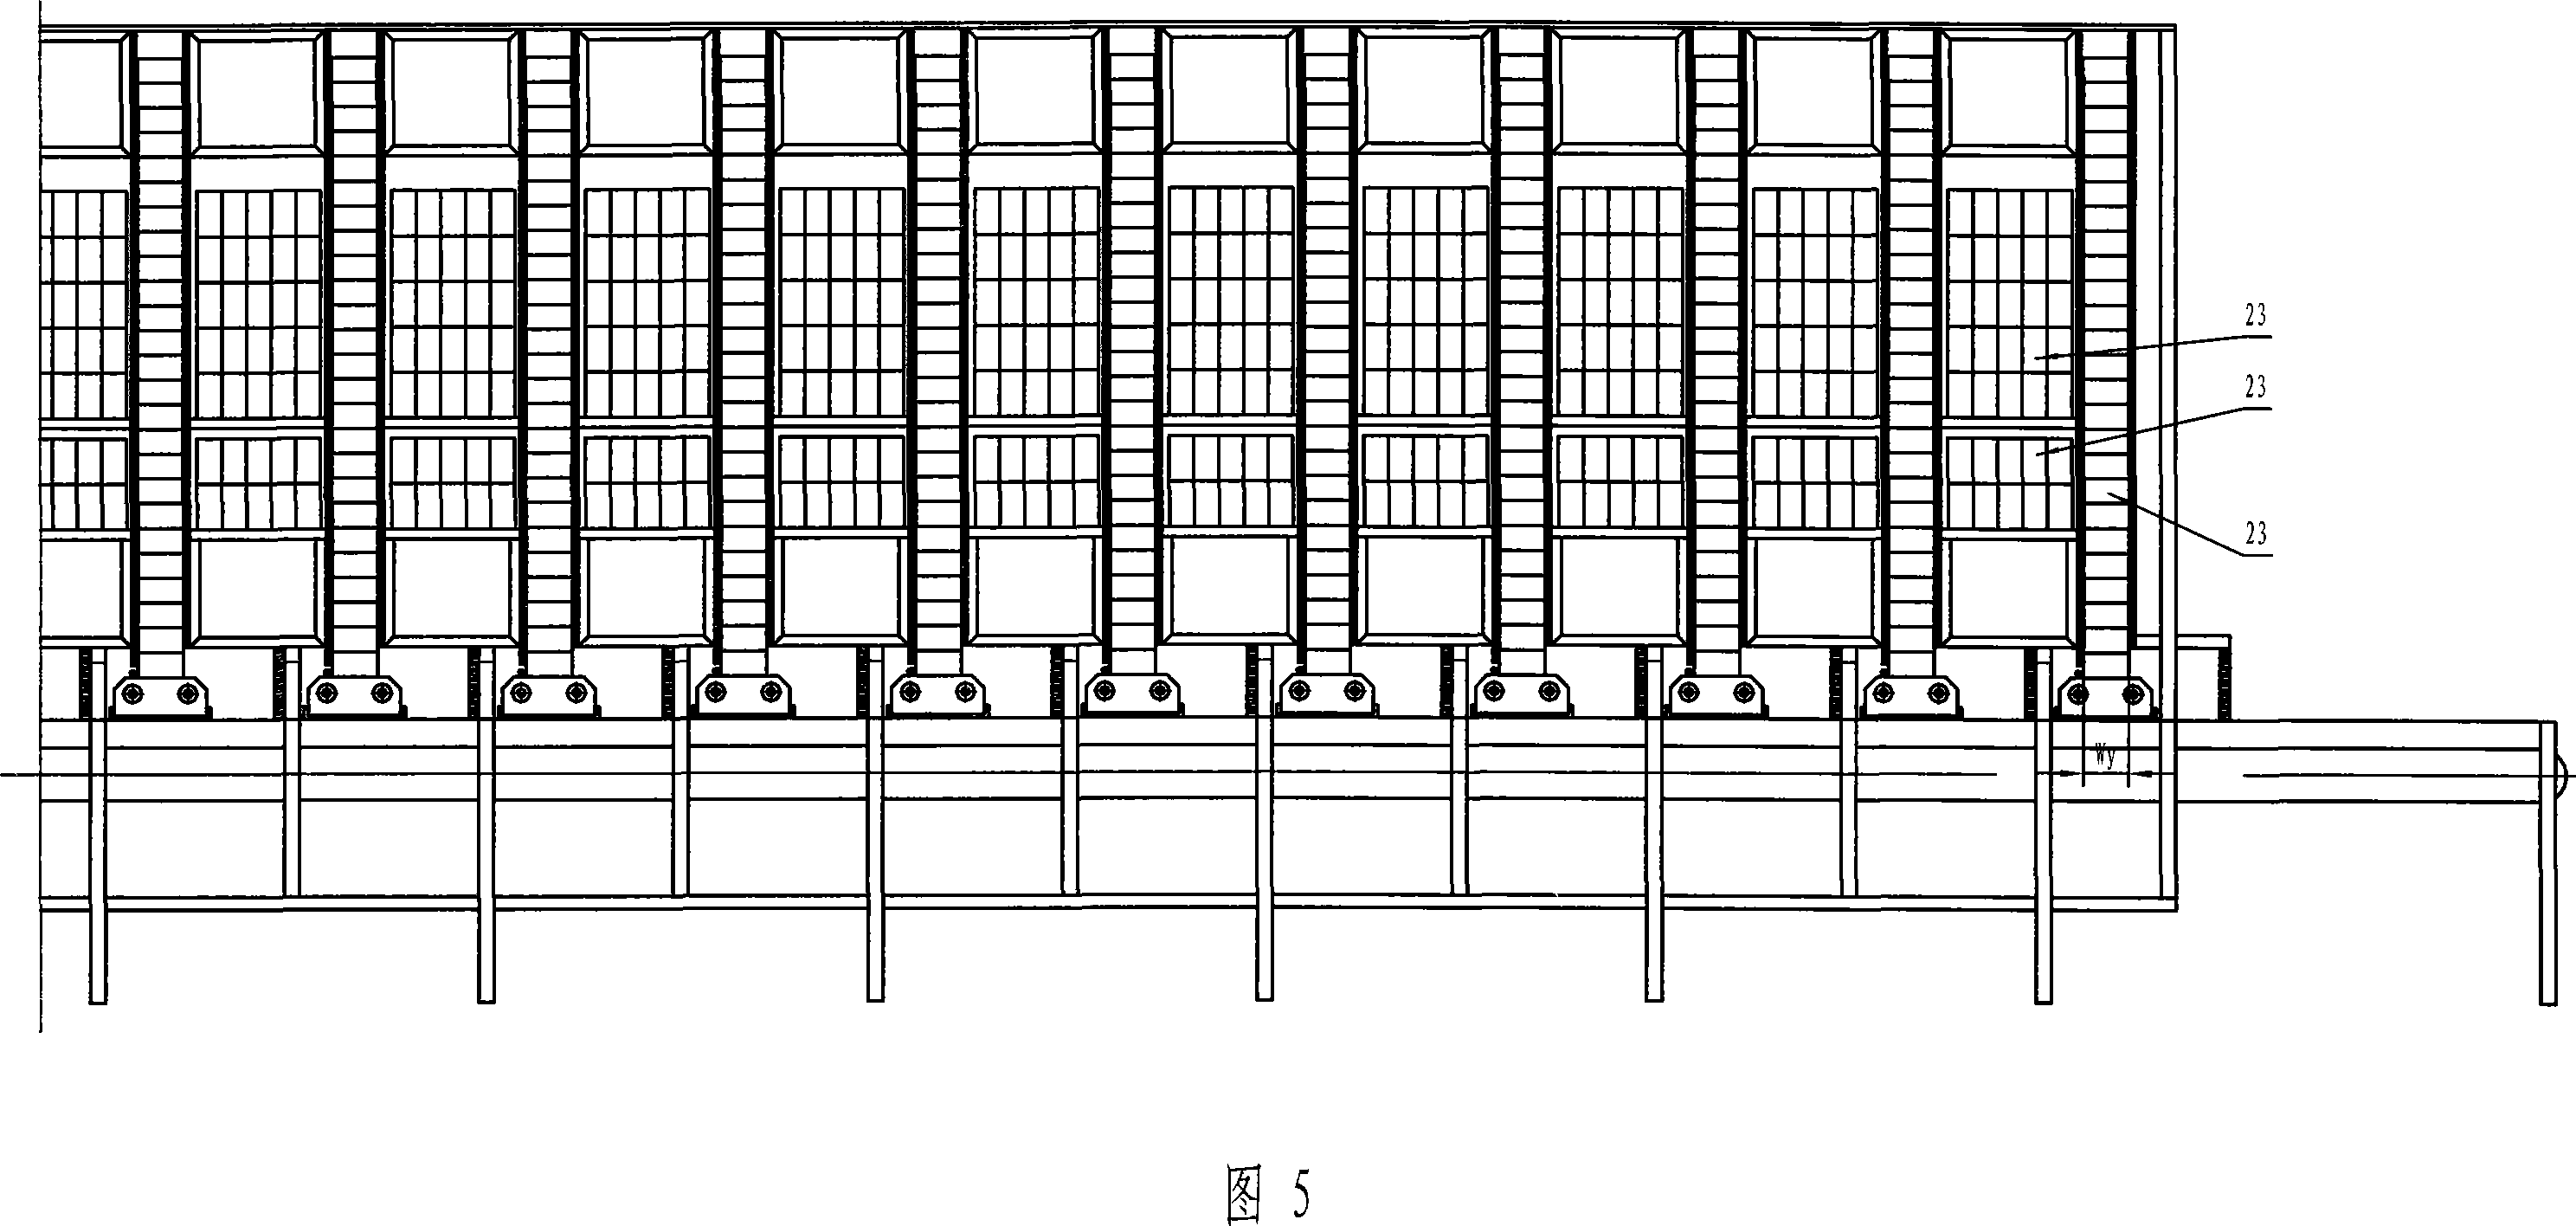 Semi-automatic cigarette sorting line